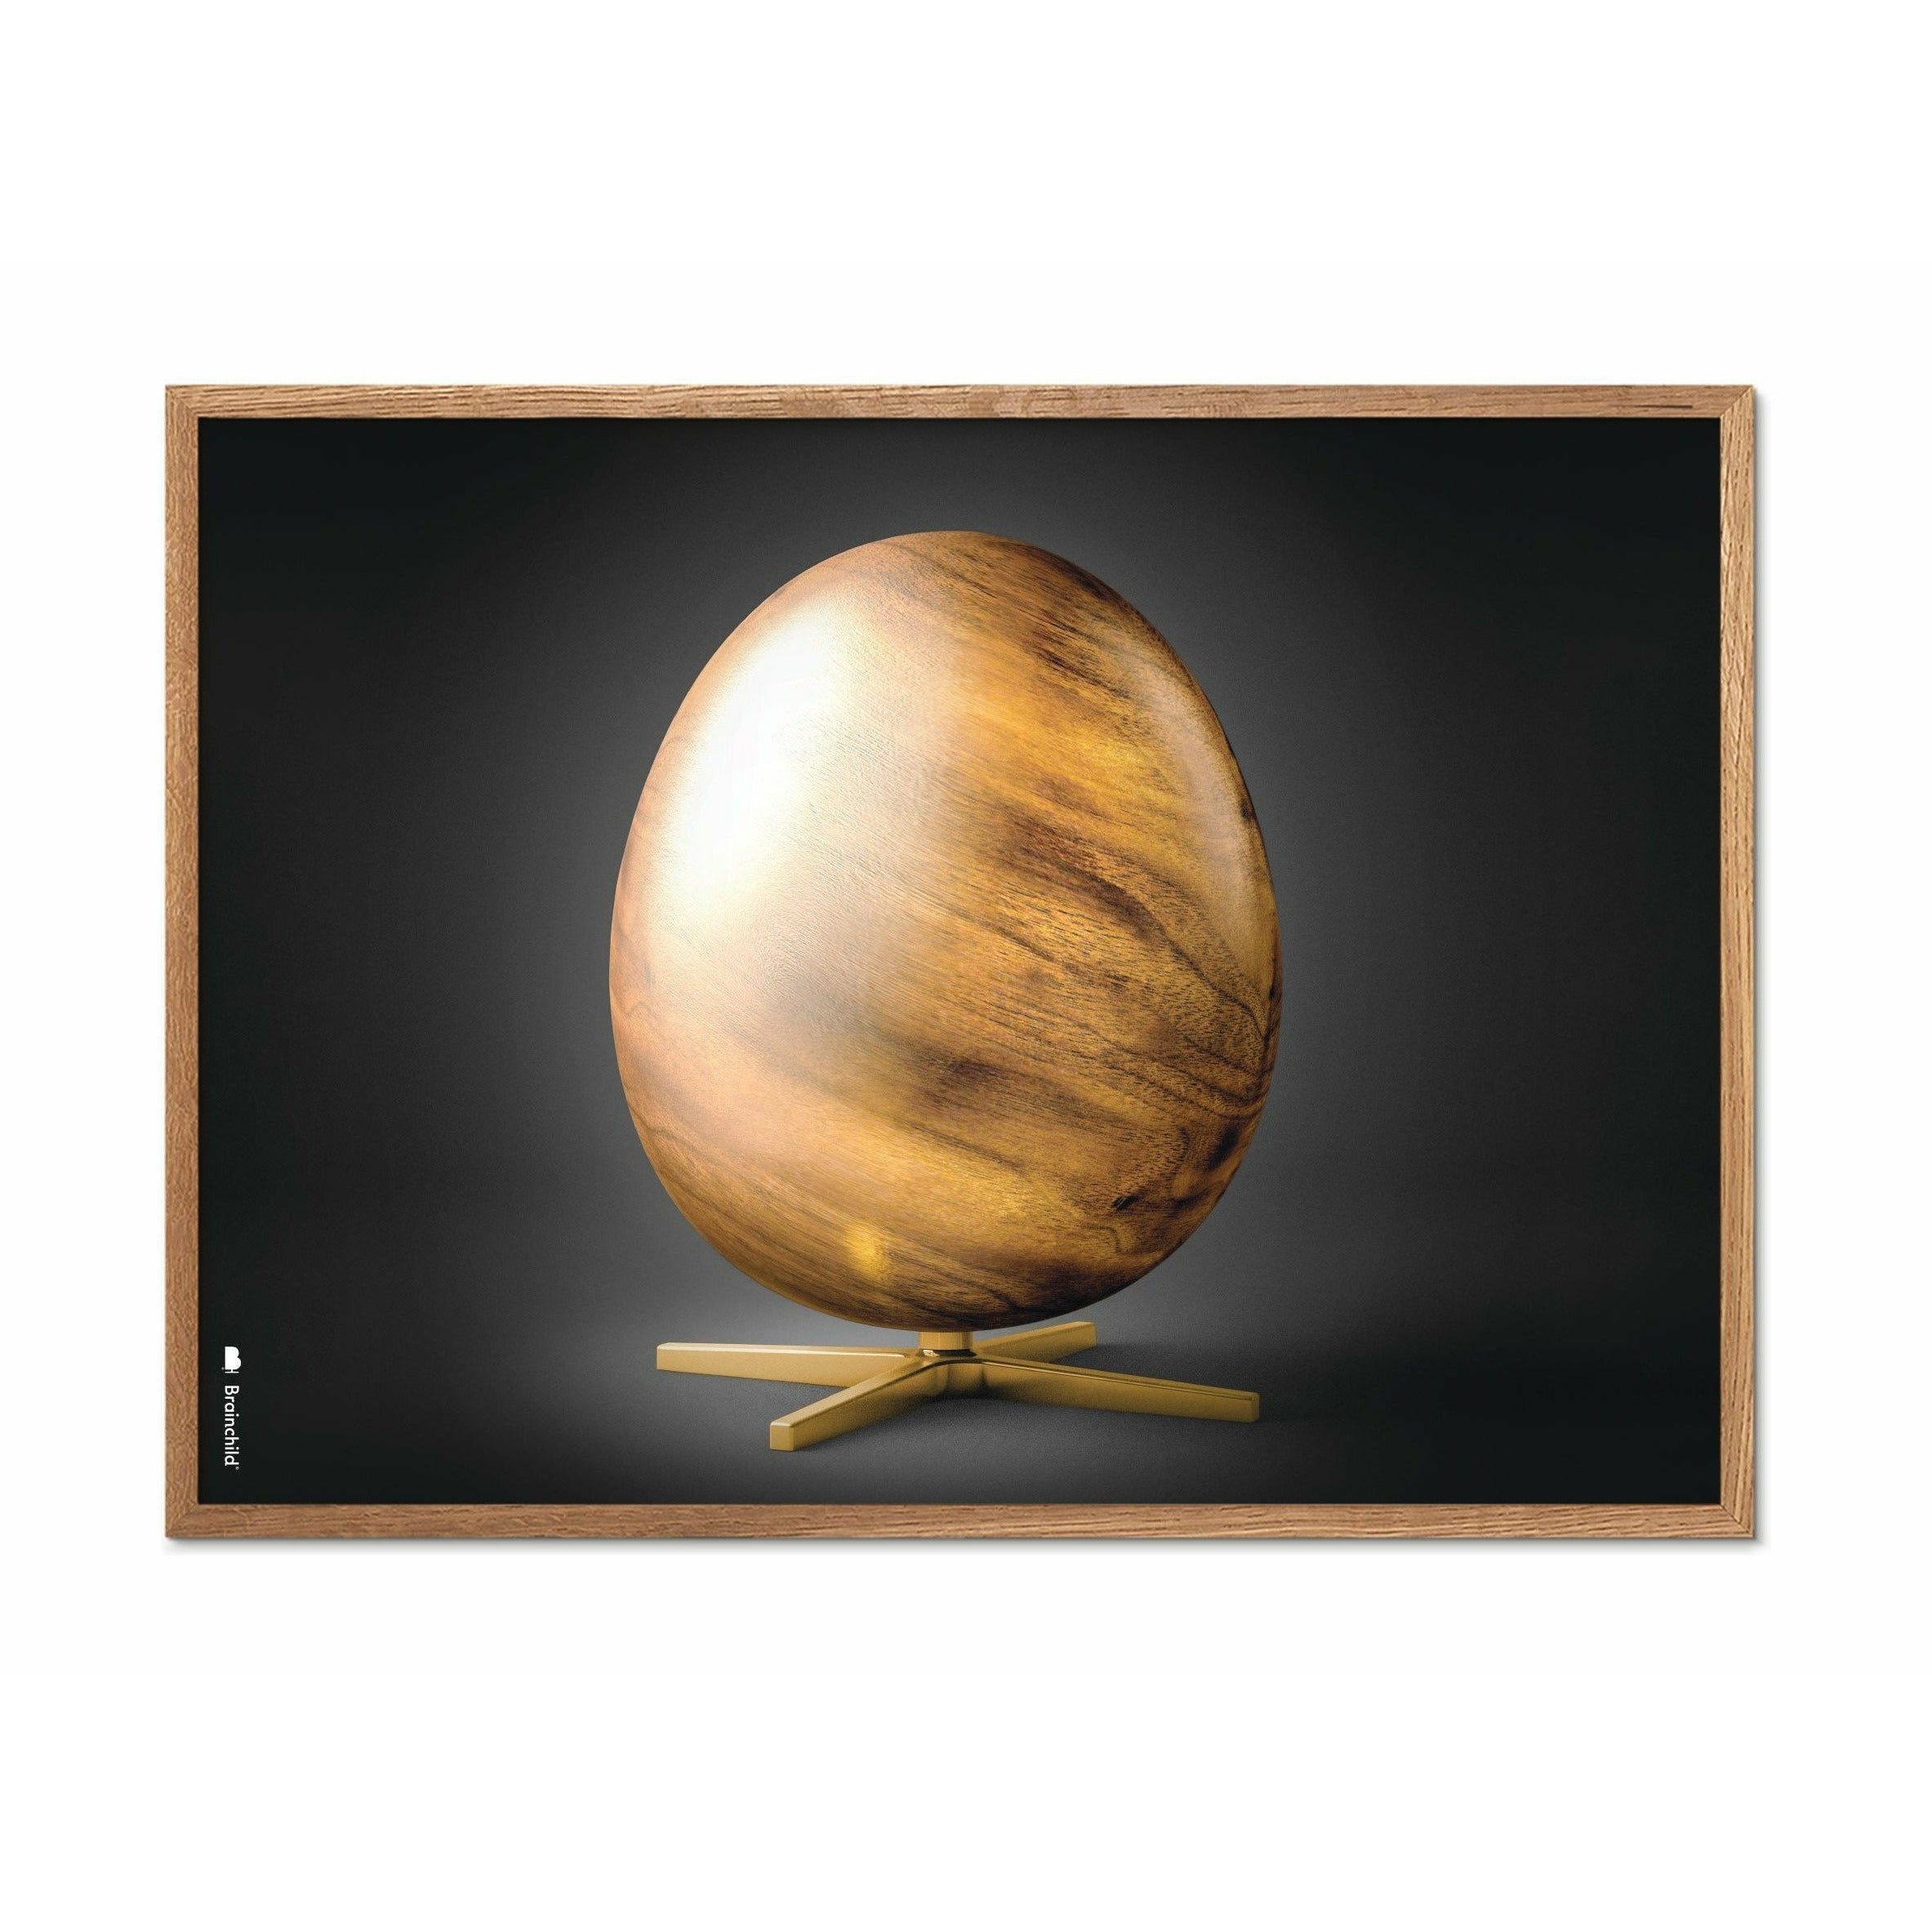 Brainchild Egg Cross Format Poster, Frame Made Of Light Wood 30x40 Cm, Black